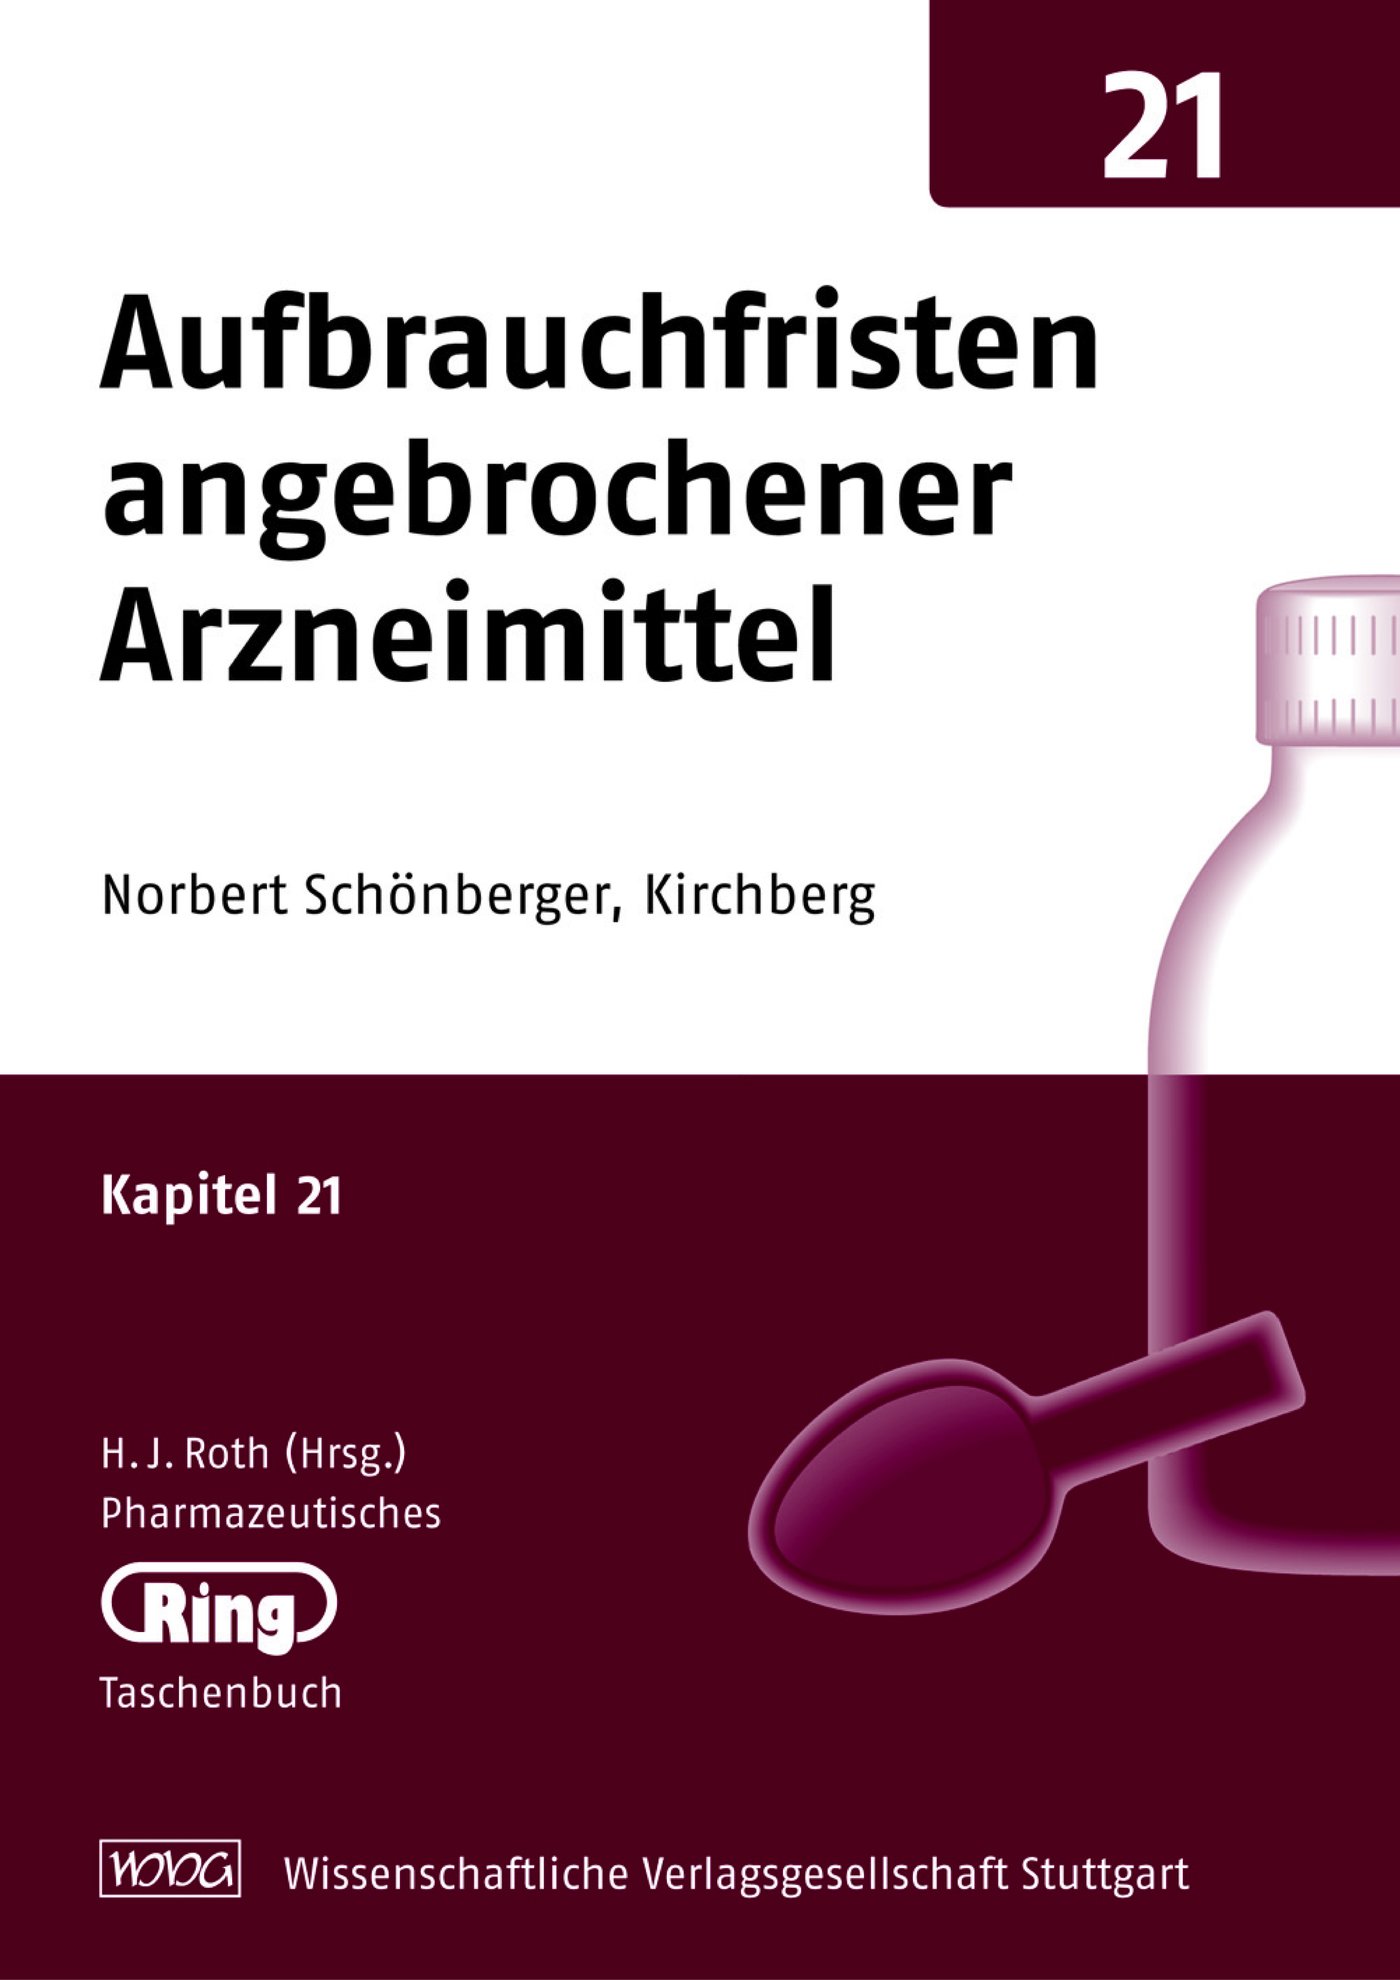 Pharmazeut. Ringtaschenbuch Bd. 21 Aufbrauchfristen angebrochener Arzneimittel